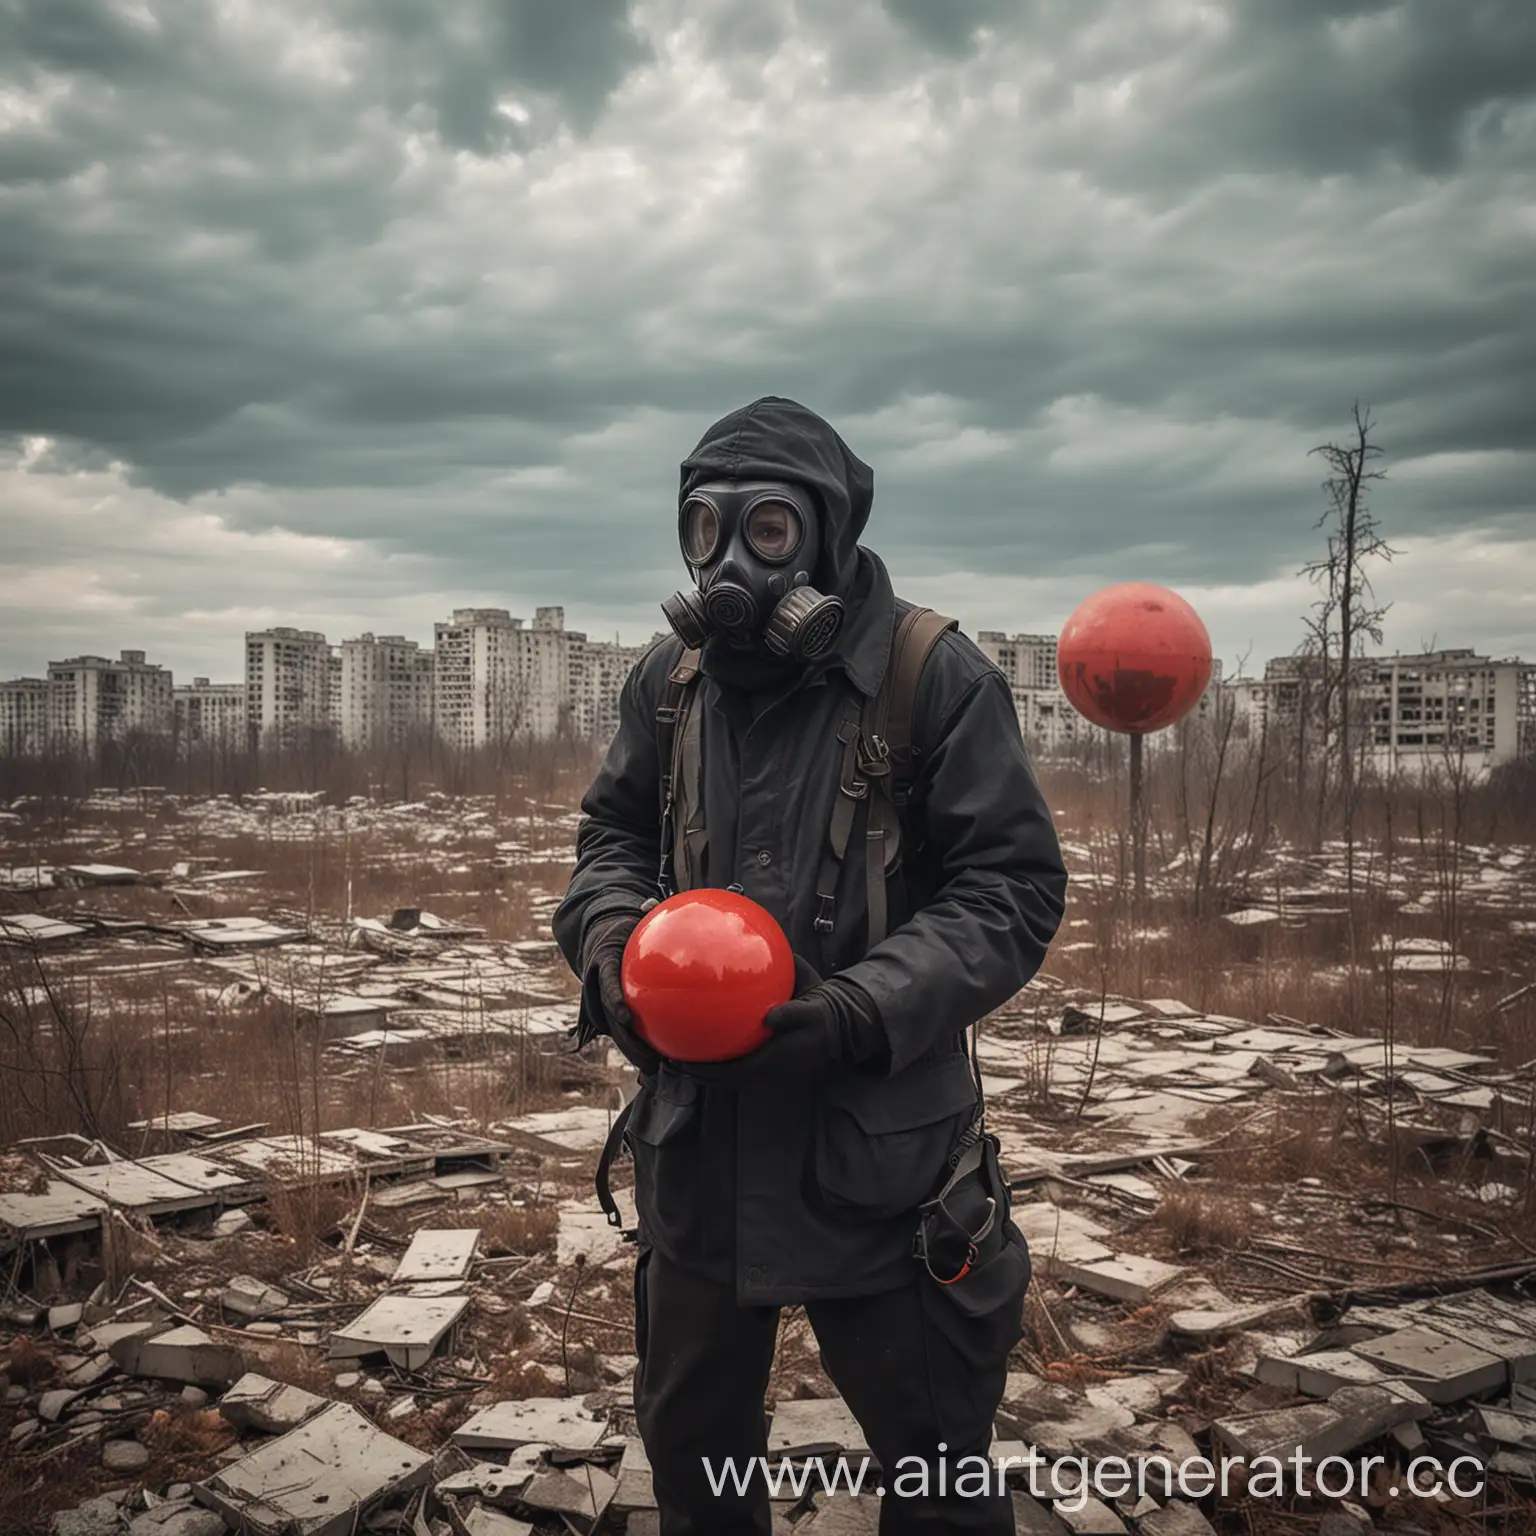 Сталкер в противогазе исследует город Припять в поиске артефакта сфера красного цвета